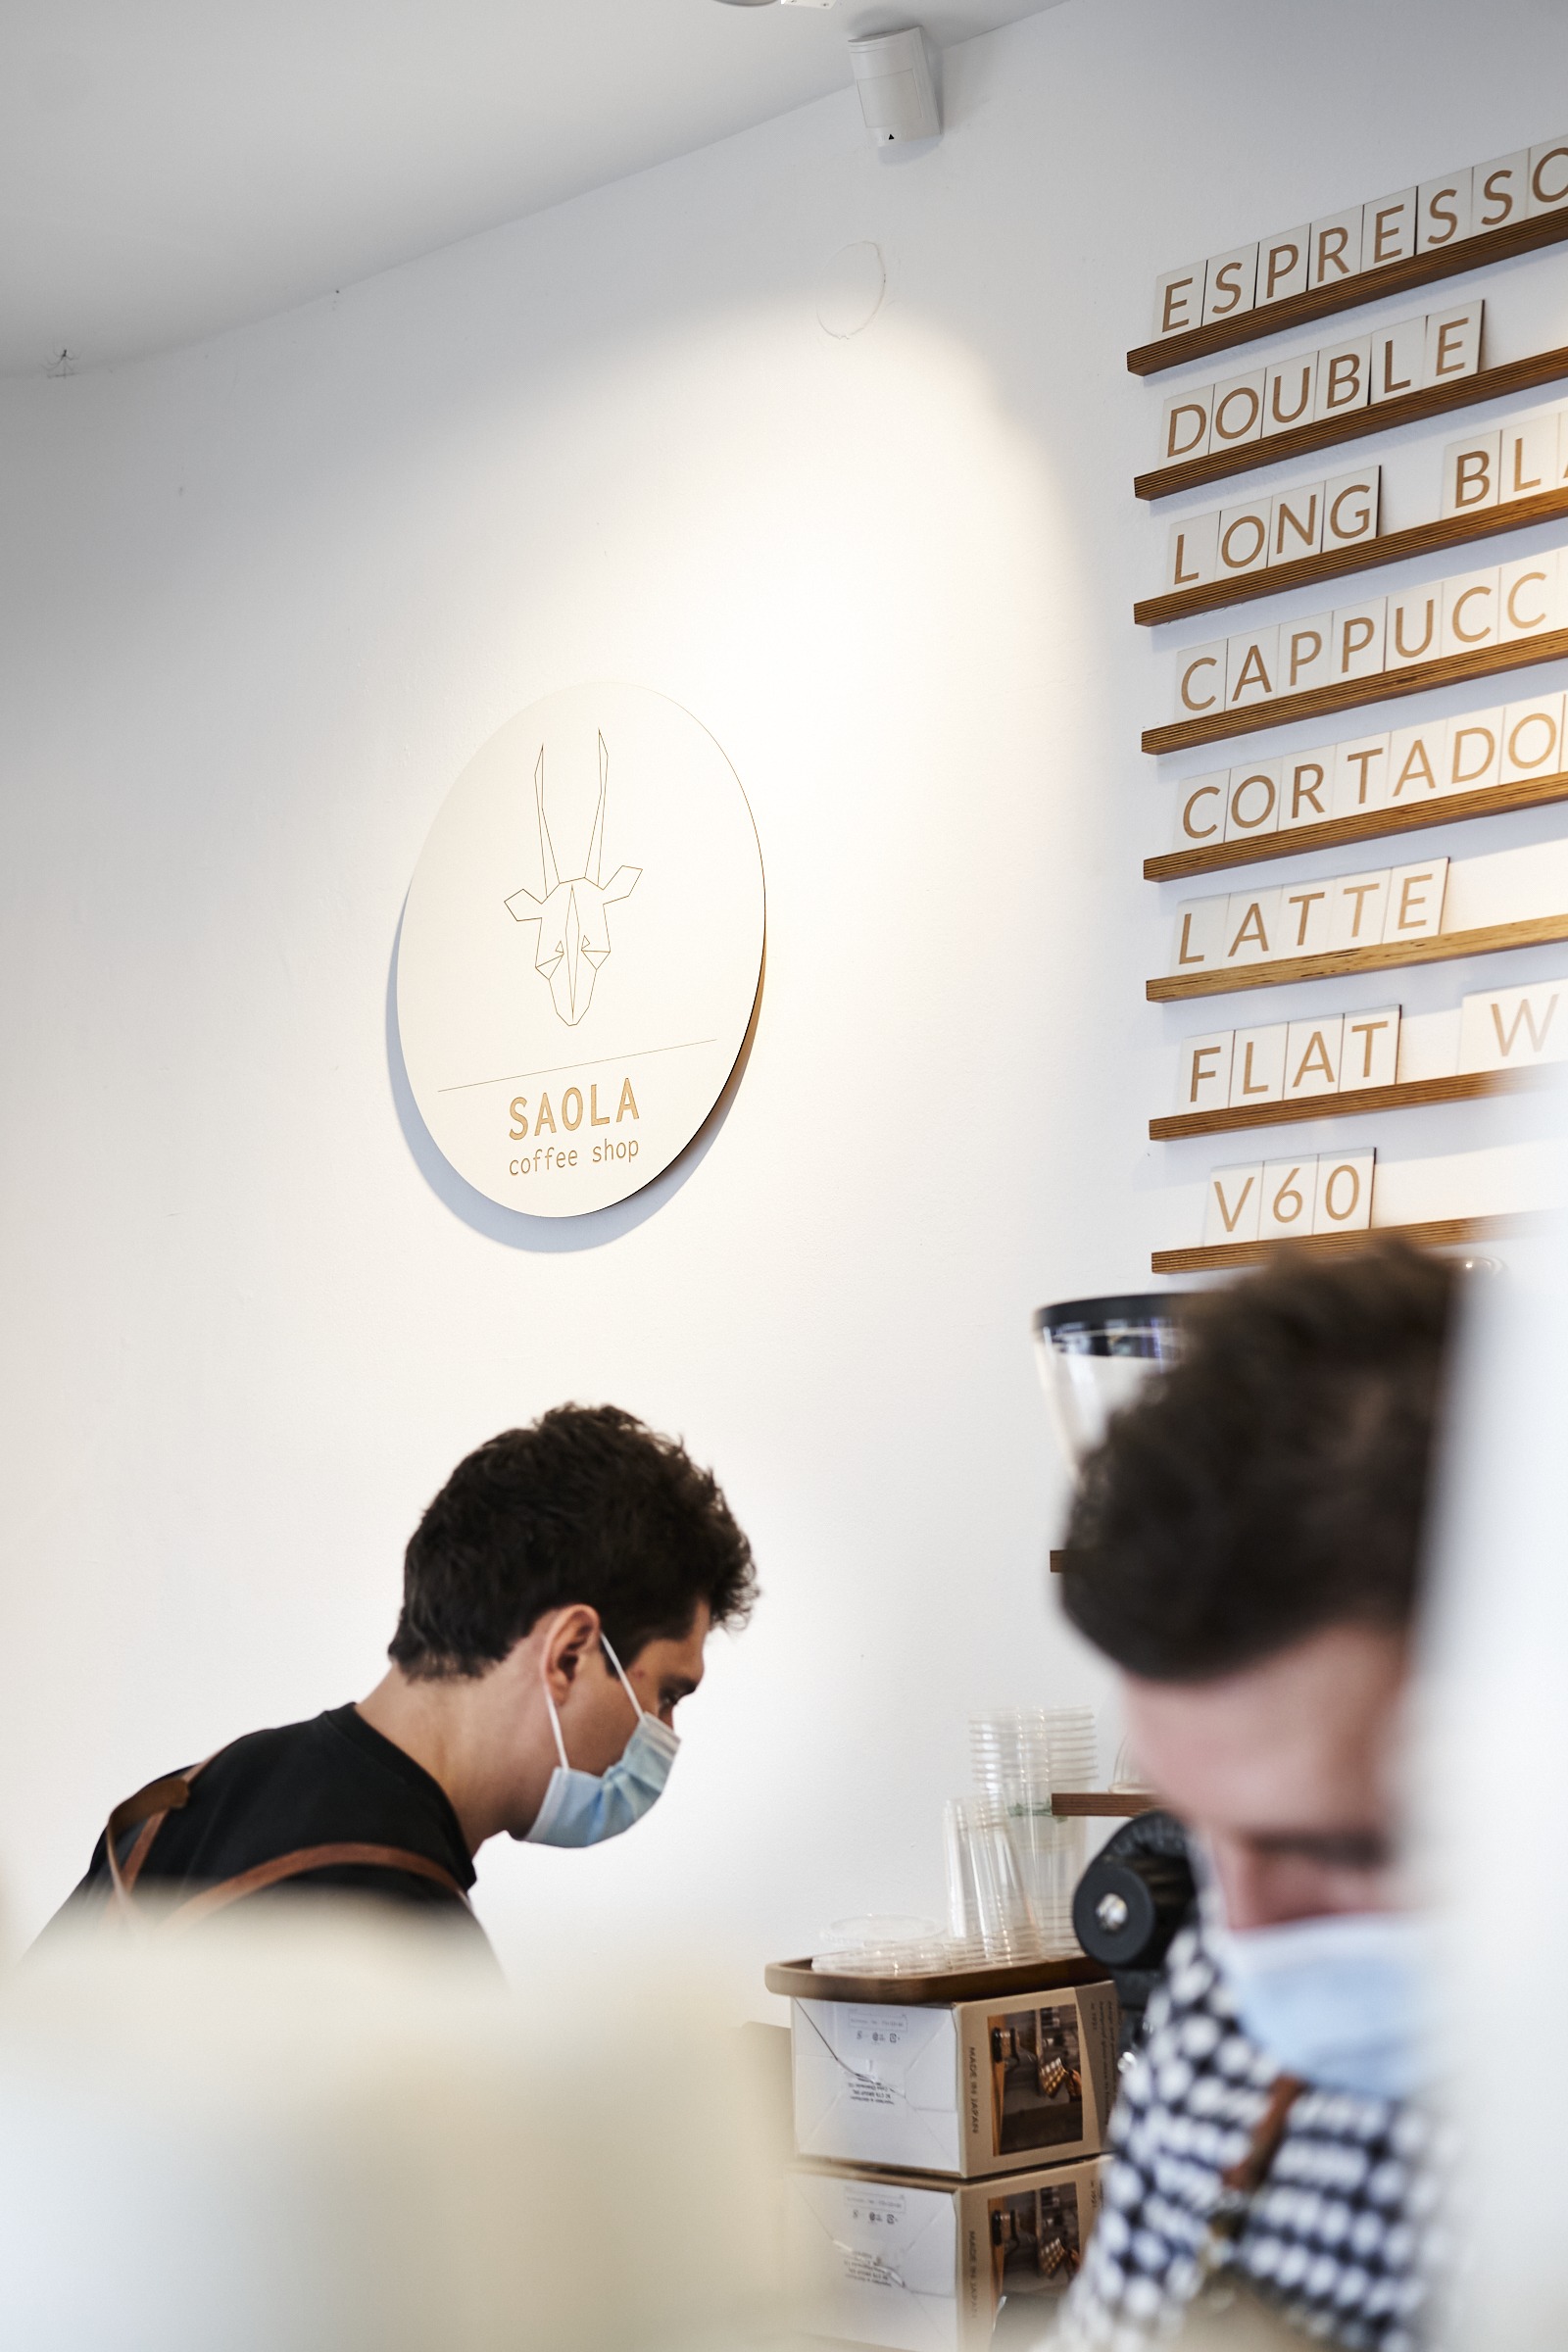 Saola Coffee Shop, locul perfect pentru iubitorii de cafea